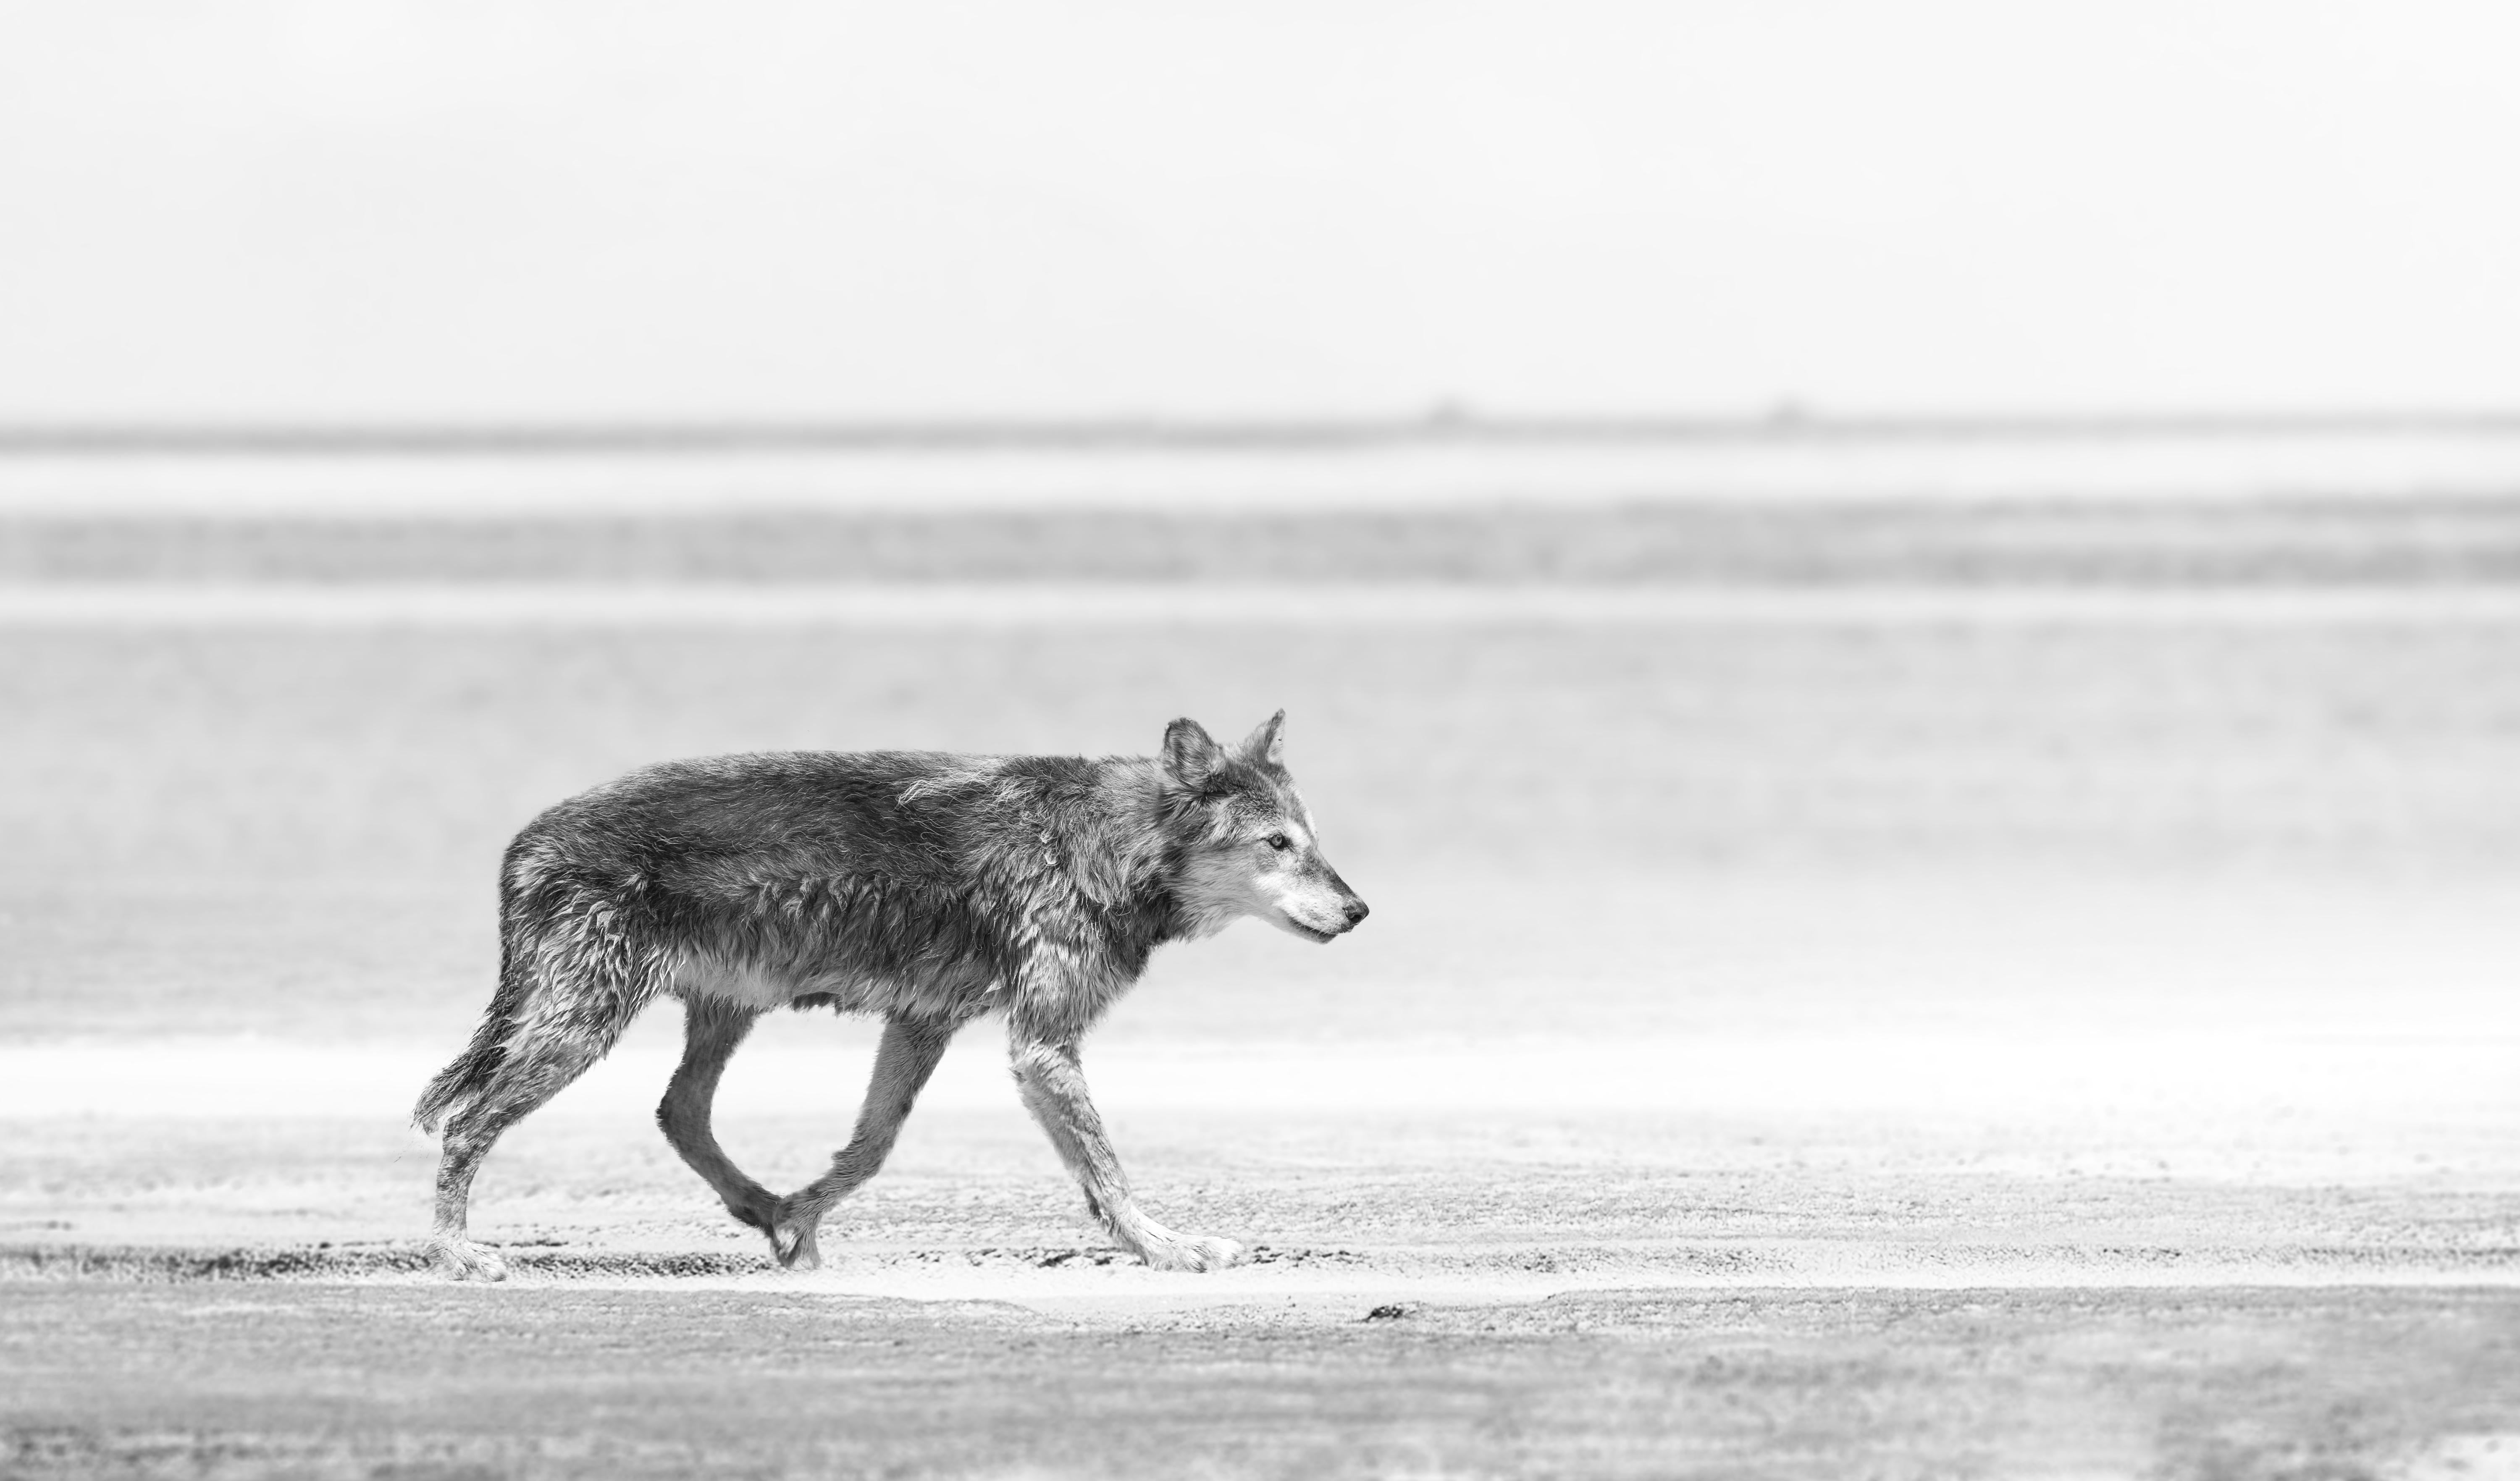 Dies ist eine zeitgenössische Schwarz-Weiß-Fotografie eines Küstenwolfs.
Gedruckt auf Archivpapier, das nur mit Archivtinte bedruckt ist. 
Einrahmung verfügbar. Erkundigen Sie sich nach den Preisen. 

 Shane Russeck hat sich den Ruf erworben,